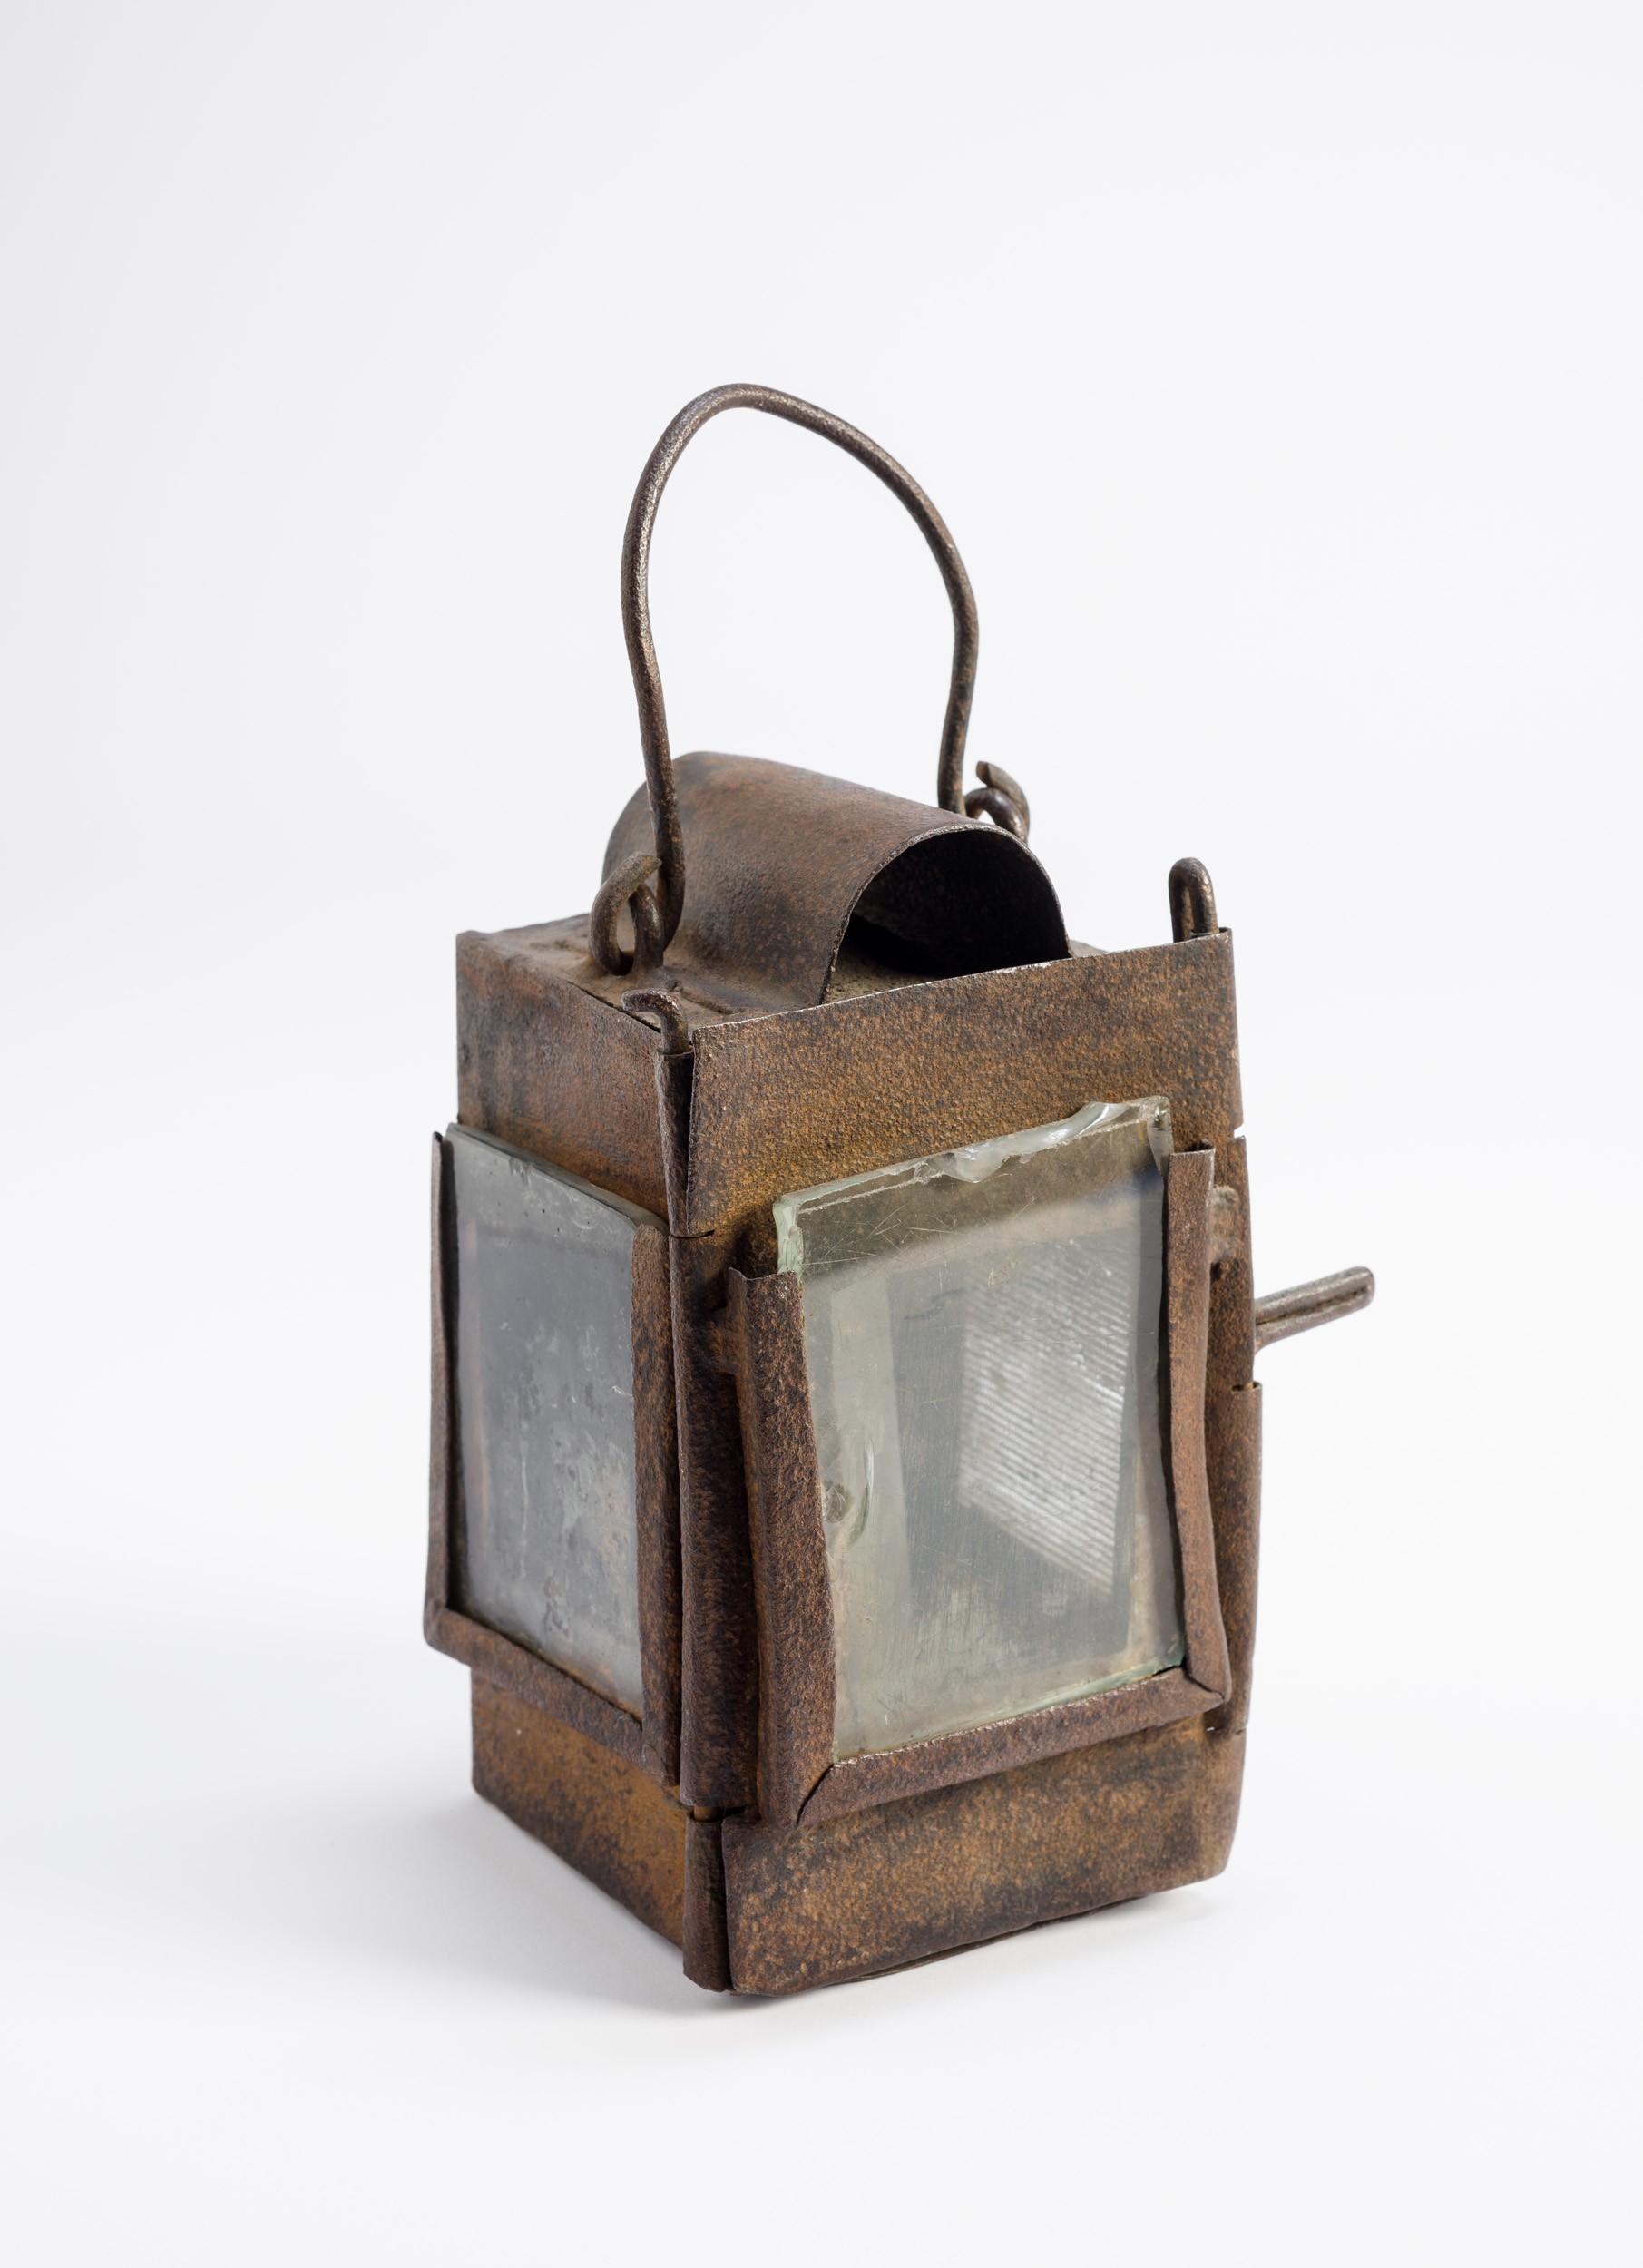 Lovaskocsi lámpa gyertyával (Söripari Emléktár - Dreher Sörmúzeum CC BY-NC-SA)